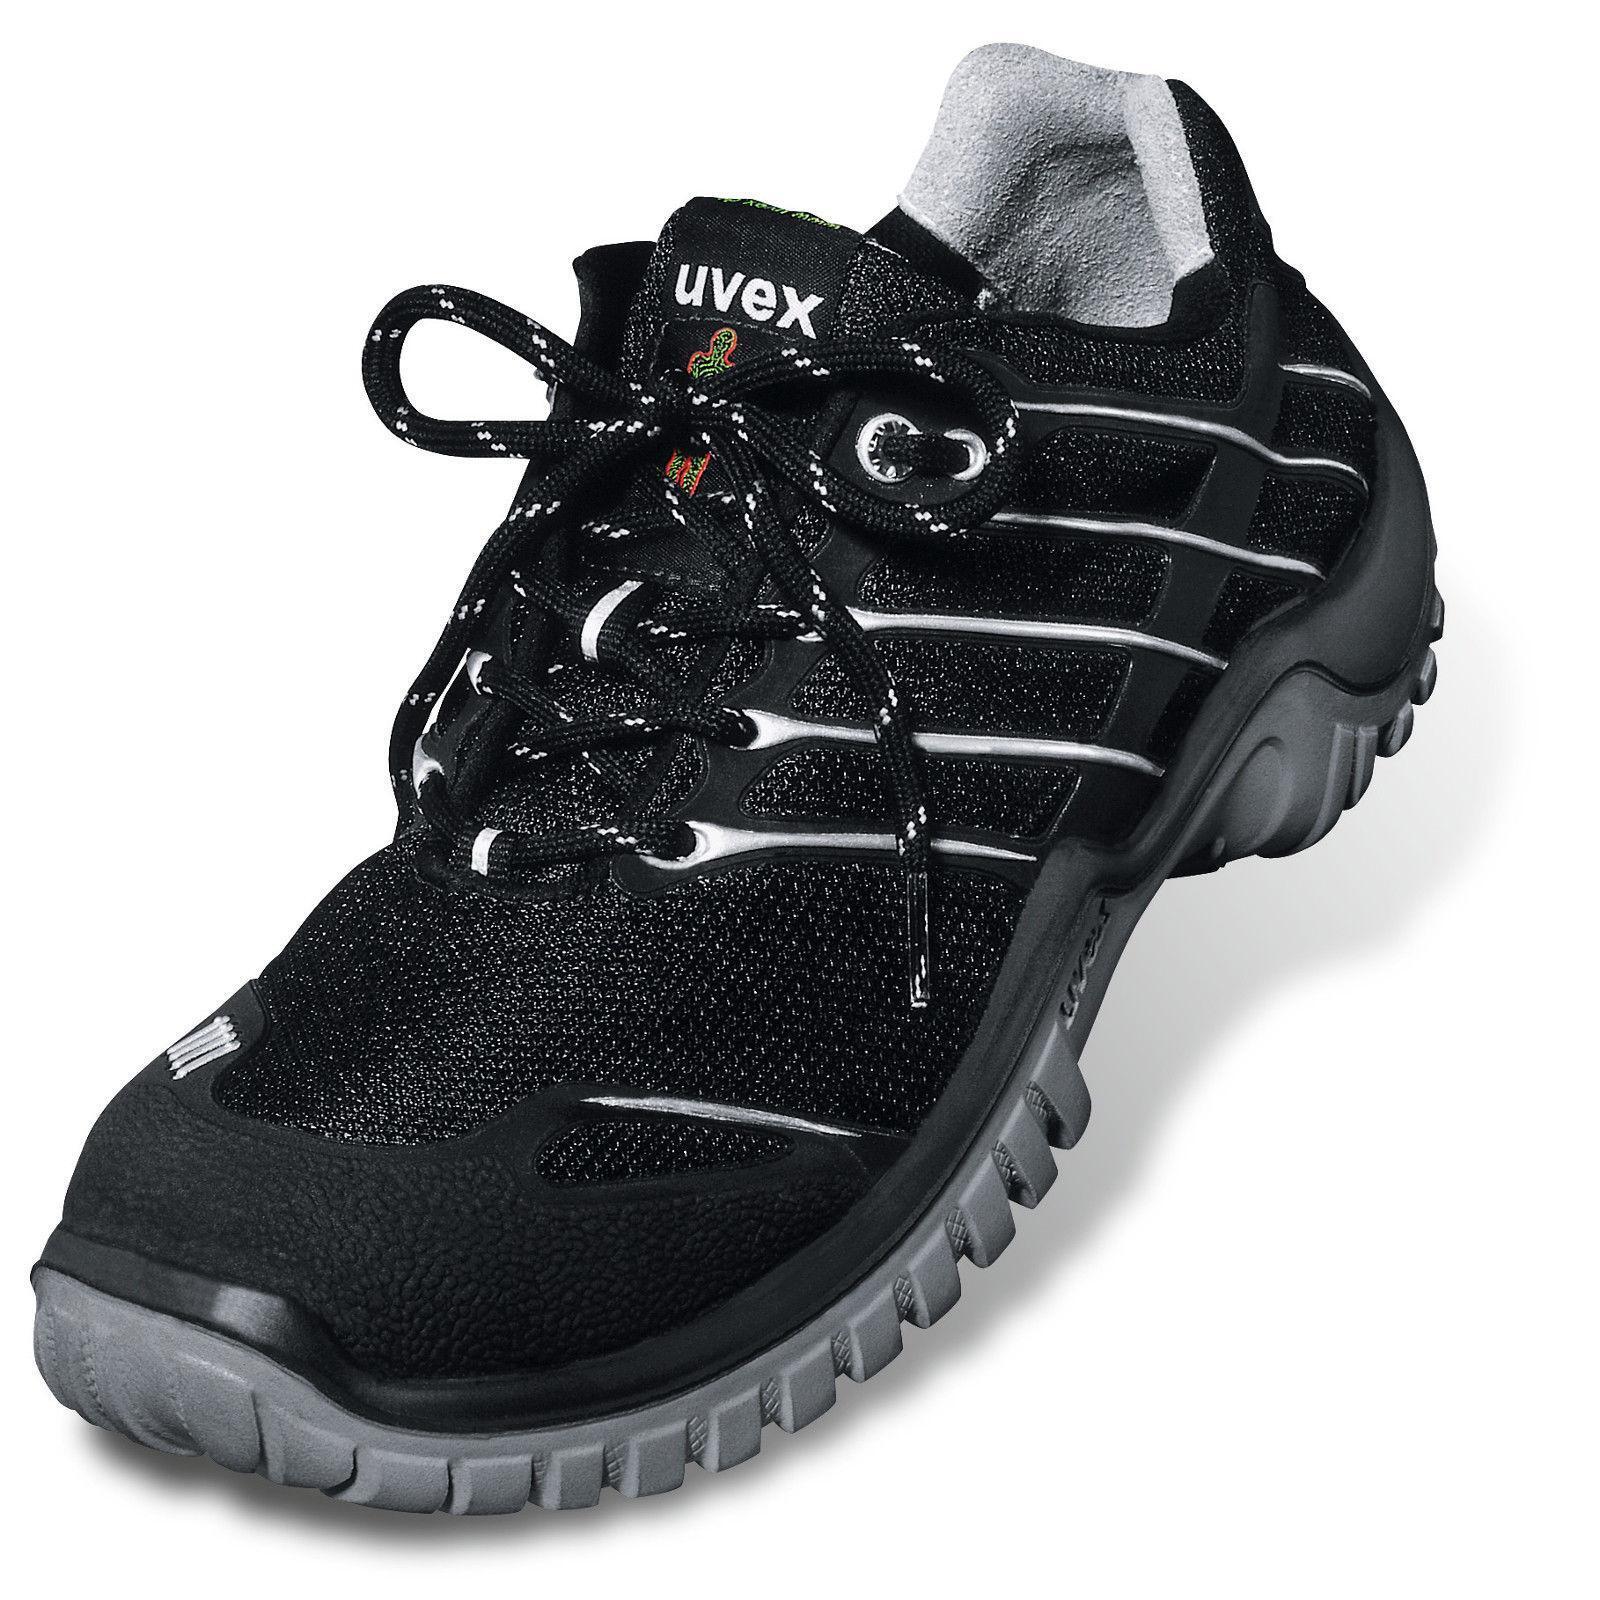 Uvex 6999.8 Motion Safety Shoe z wkładką Hydroflex 3D Foam, S1, Sprzedaż Popularna produkcja krajowa